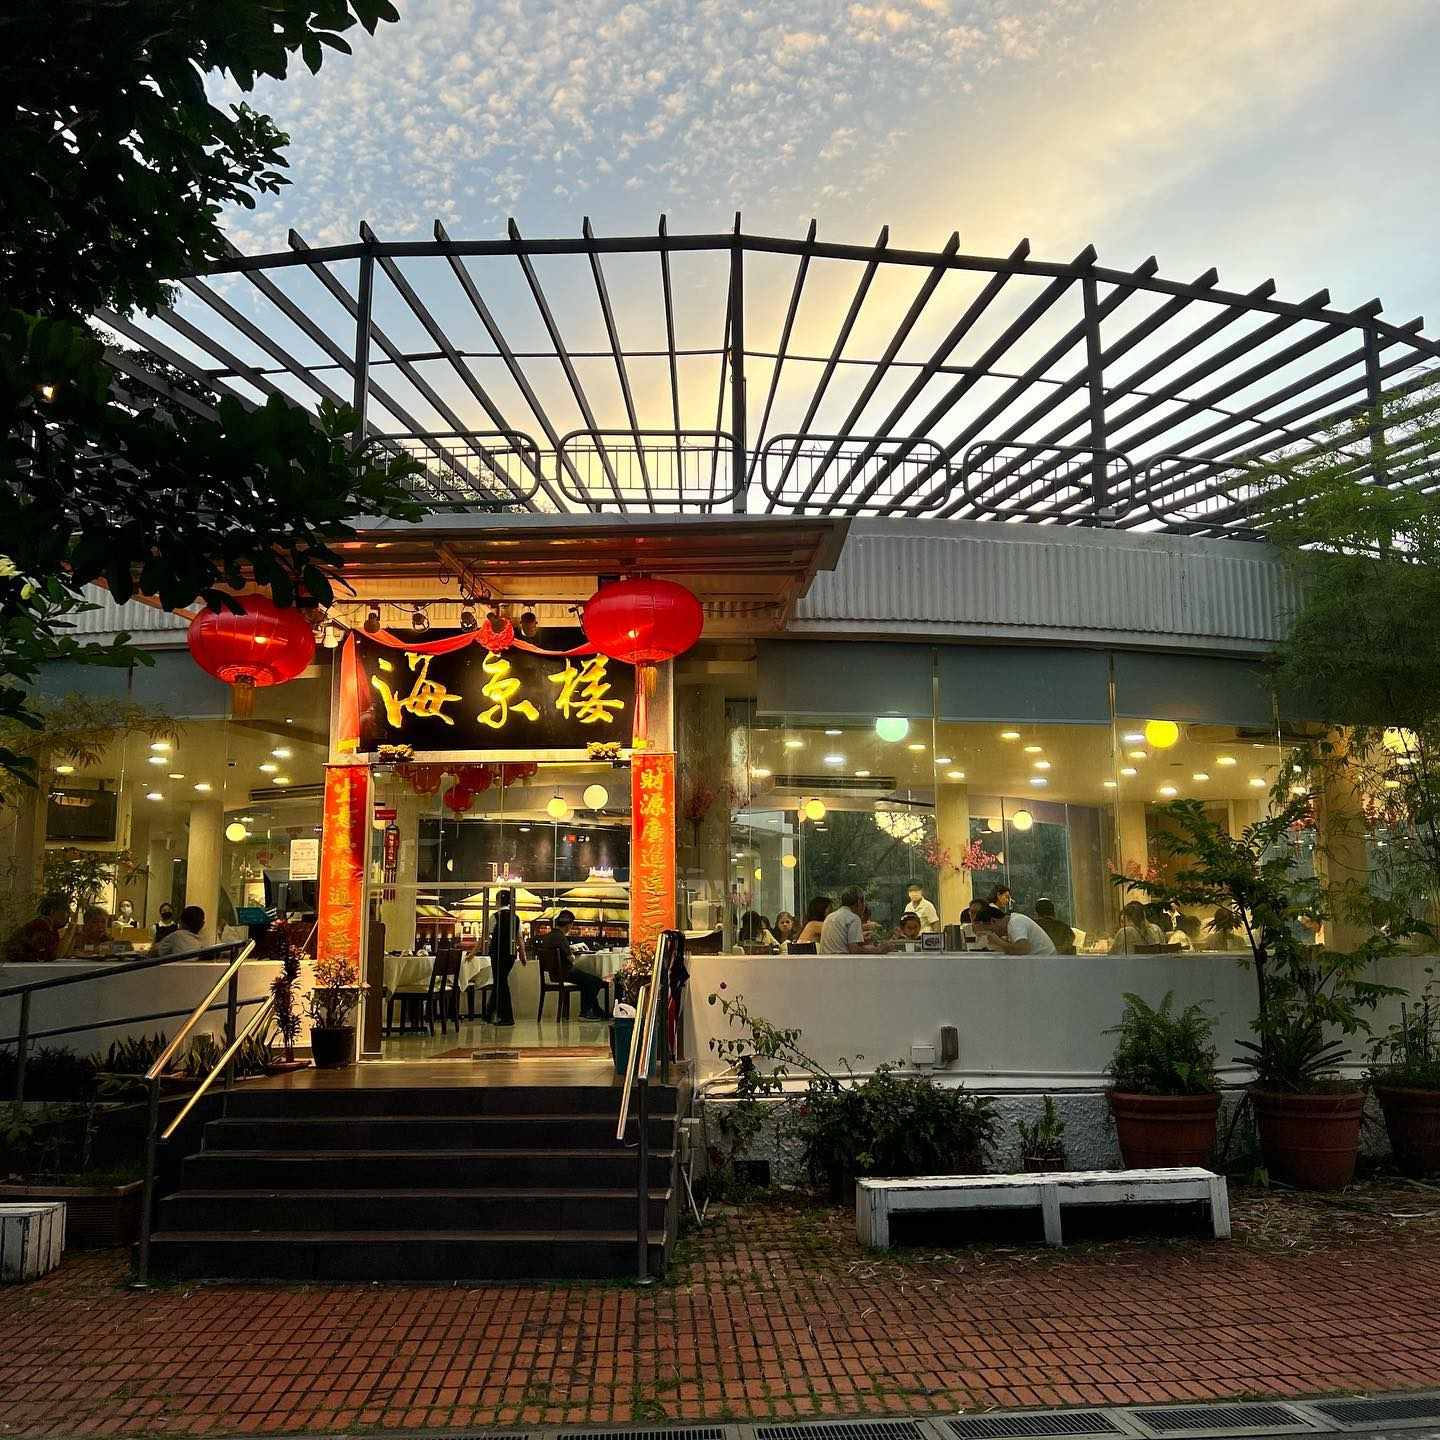 oasis bay taiwan porridge - storefront (1)